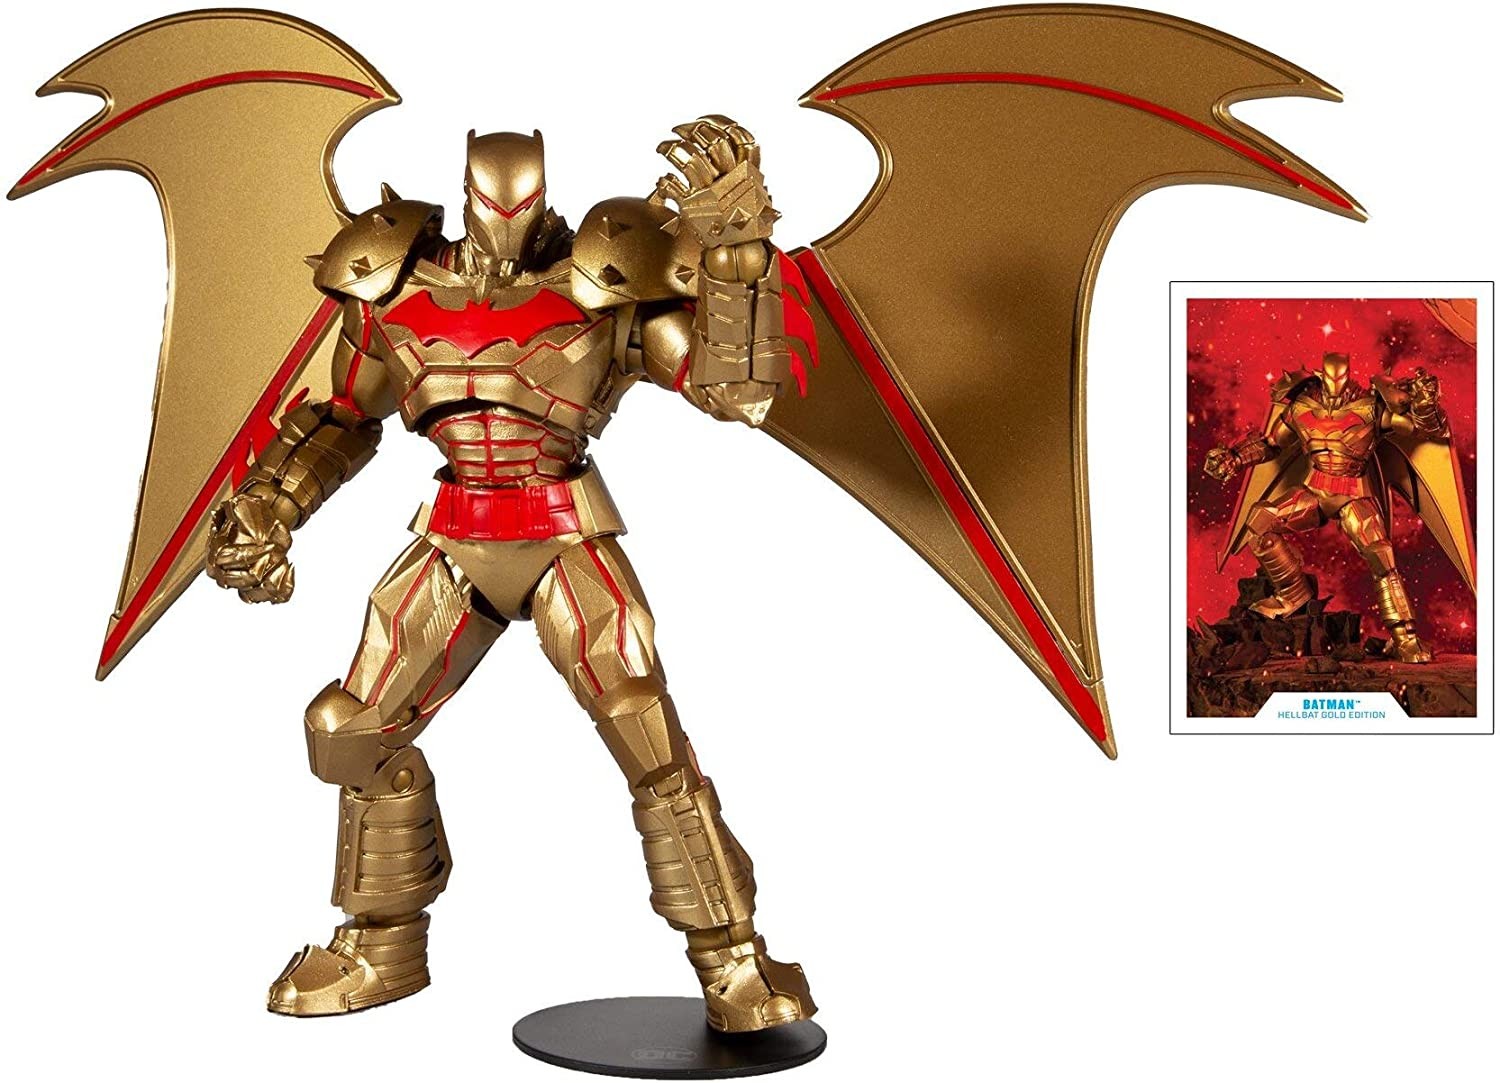 Dc Multiverse Action Figure Batman Hellbat Suit (Gold Edition) 18 Cm - 1